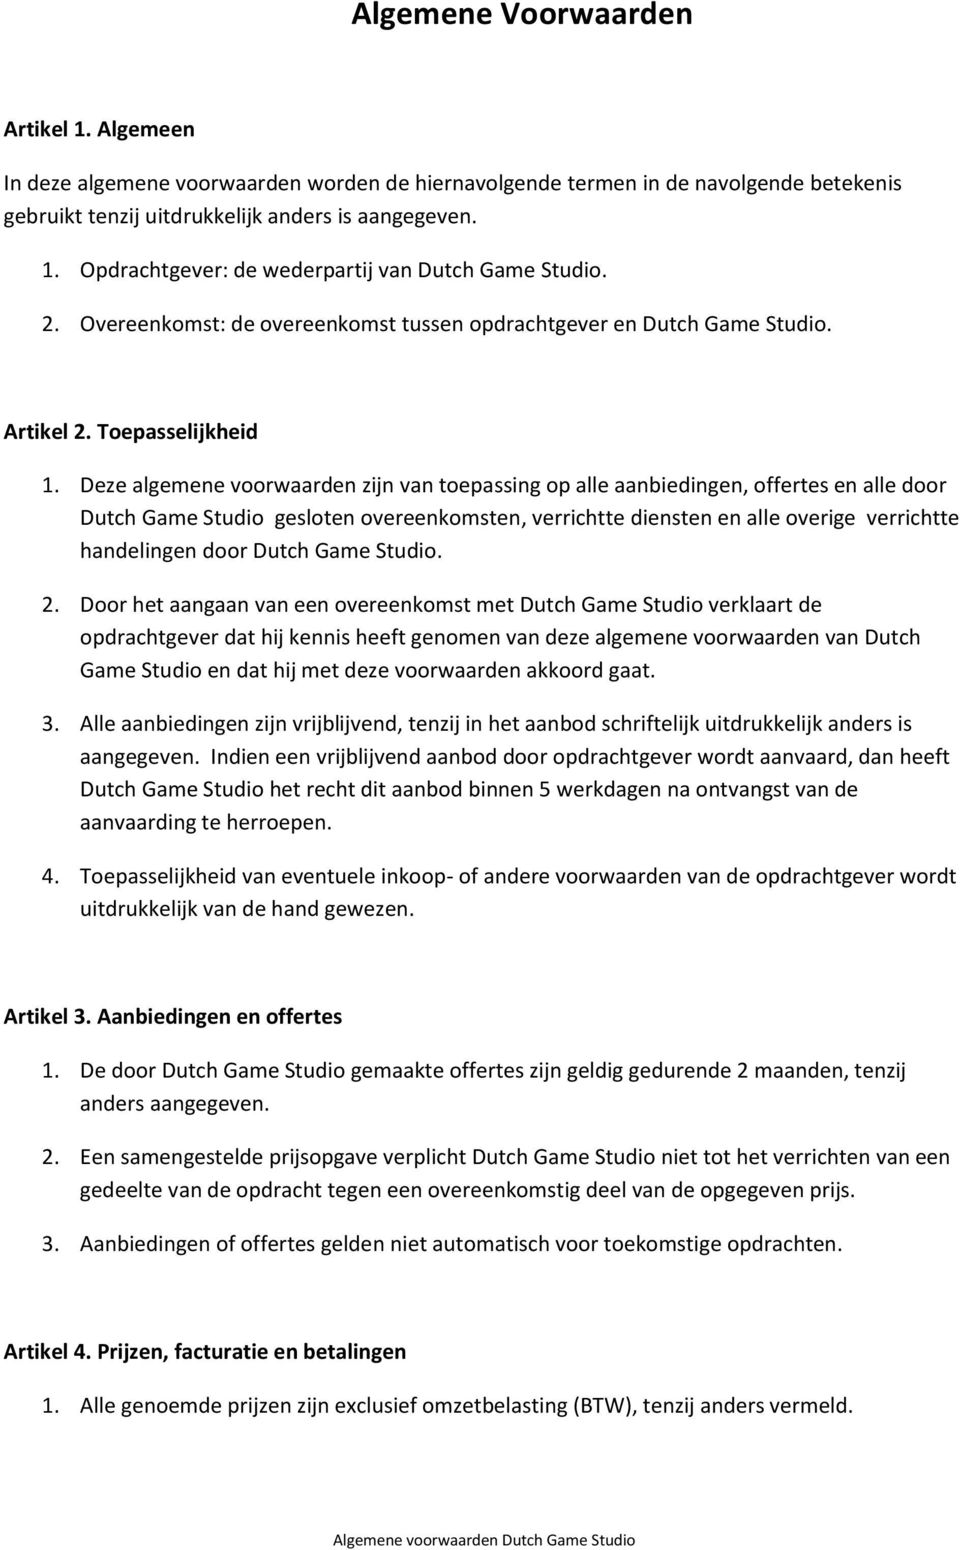 Deze algemene voorwaarden zijn van toepassing op alle aanbiedingen, offertes en alle door Dutch Game Studio gesloten overeenkomsten, verrichtte diensten en alle overige verrichtte handelingen door